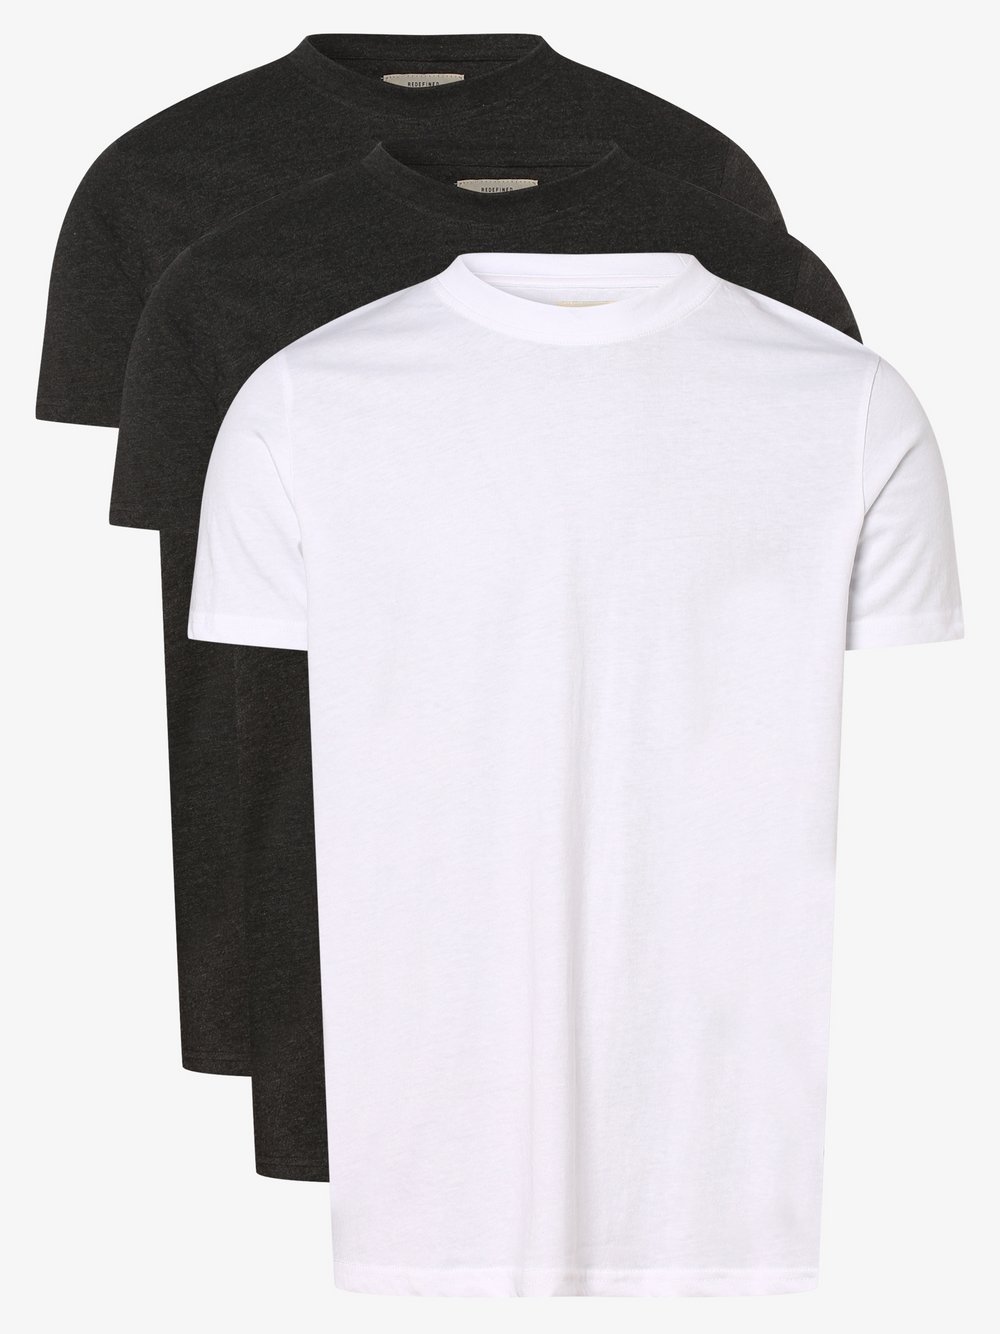 Redefined Rebel - T-shirty męskie pakowane po 3 sztuki – RRTim, czarny